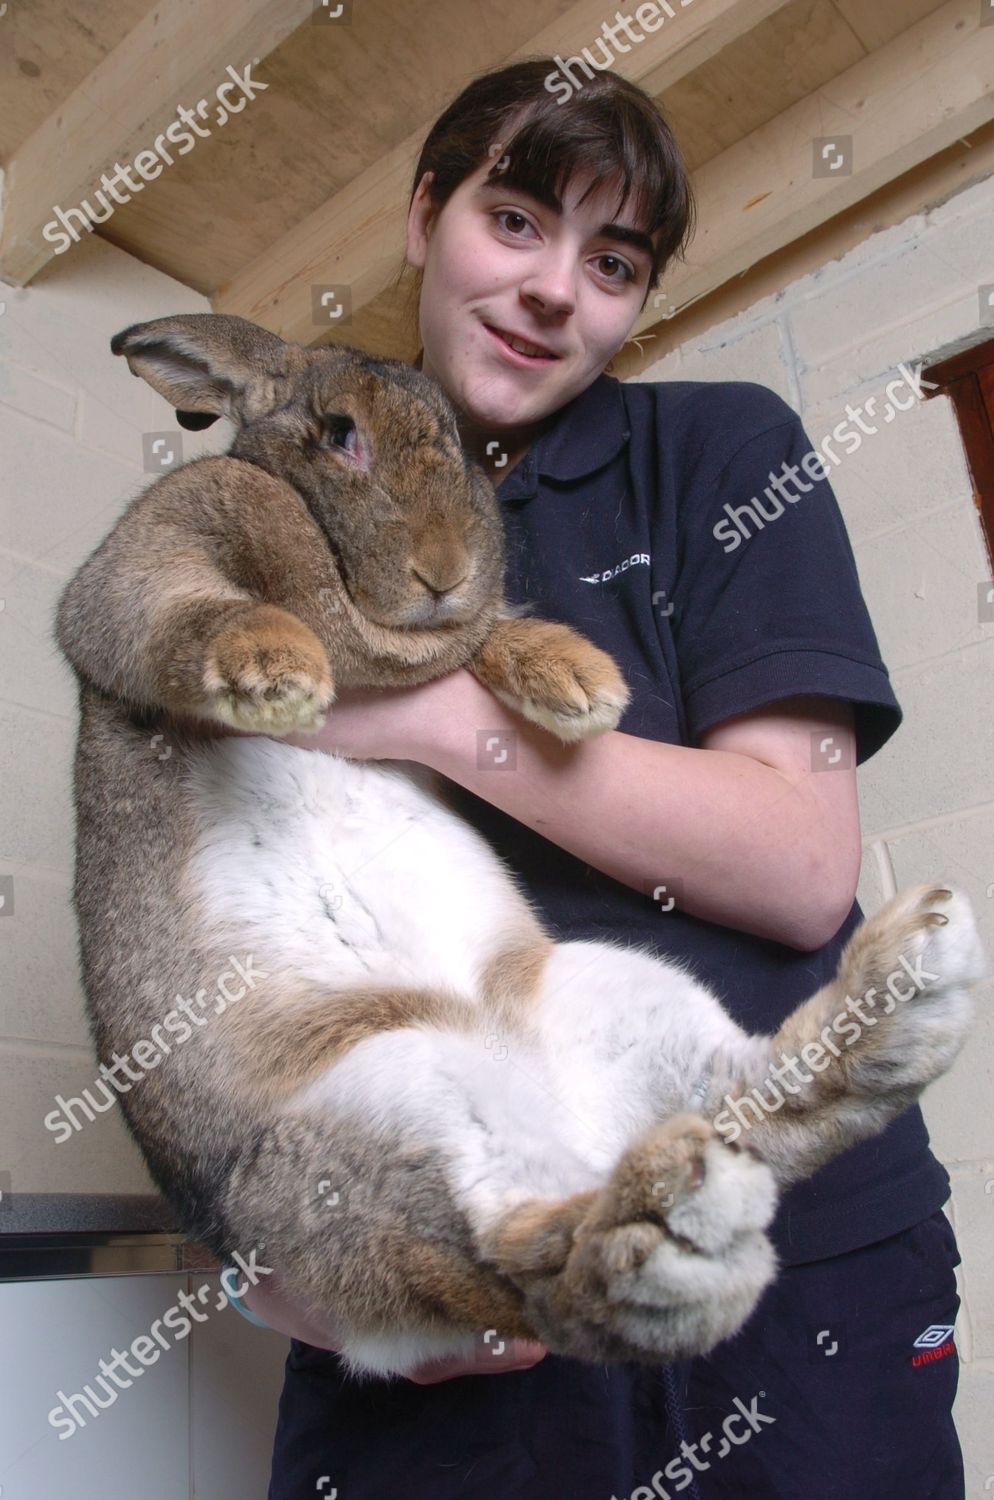 giant rabbits